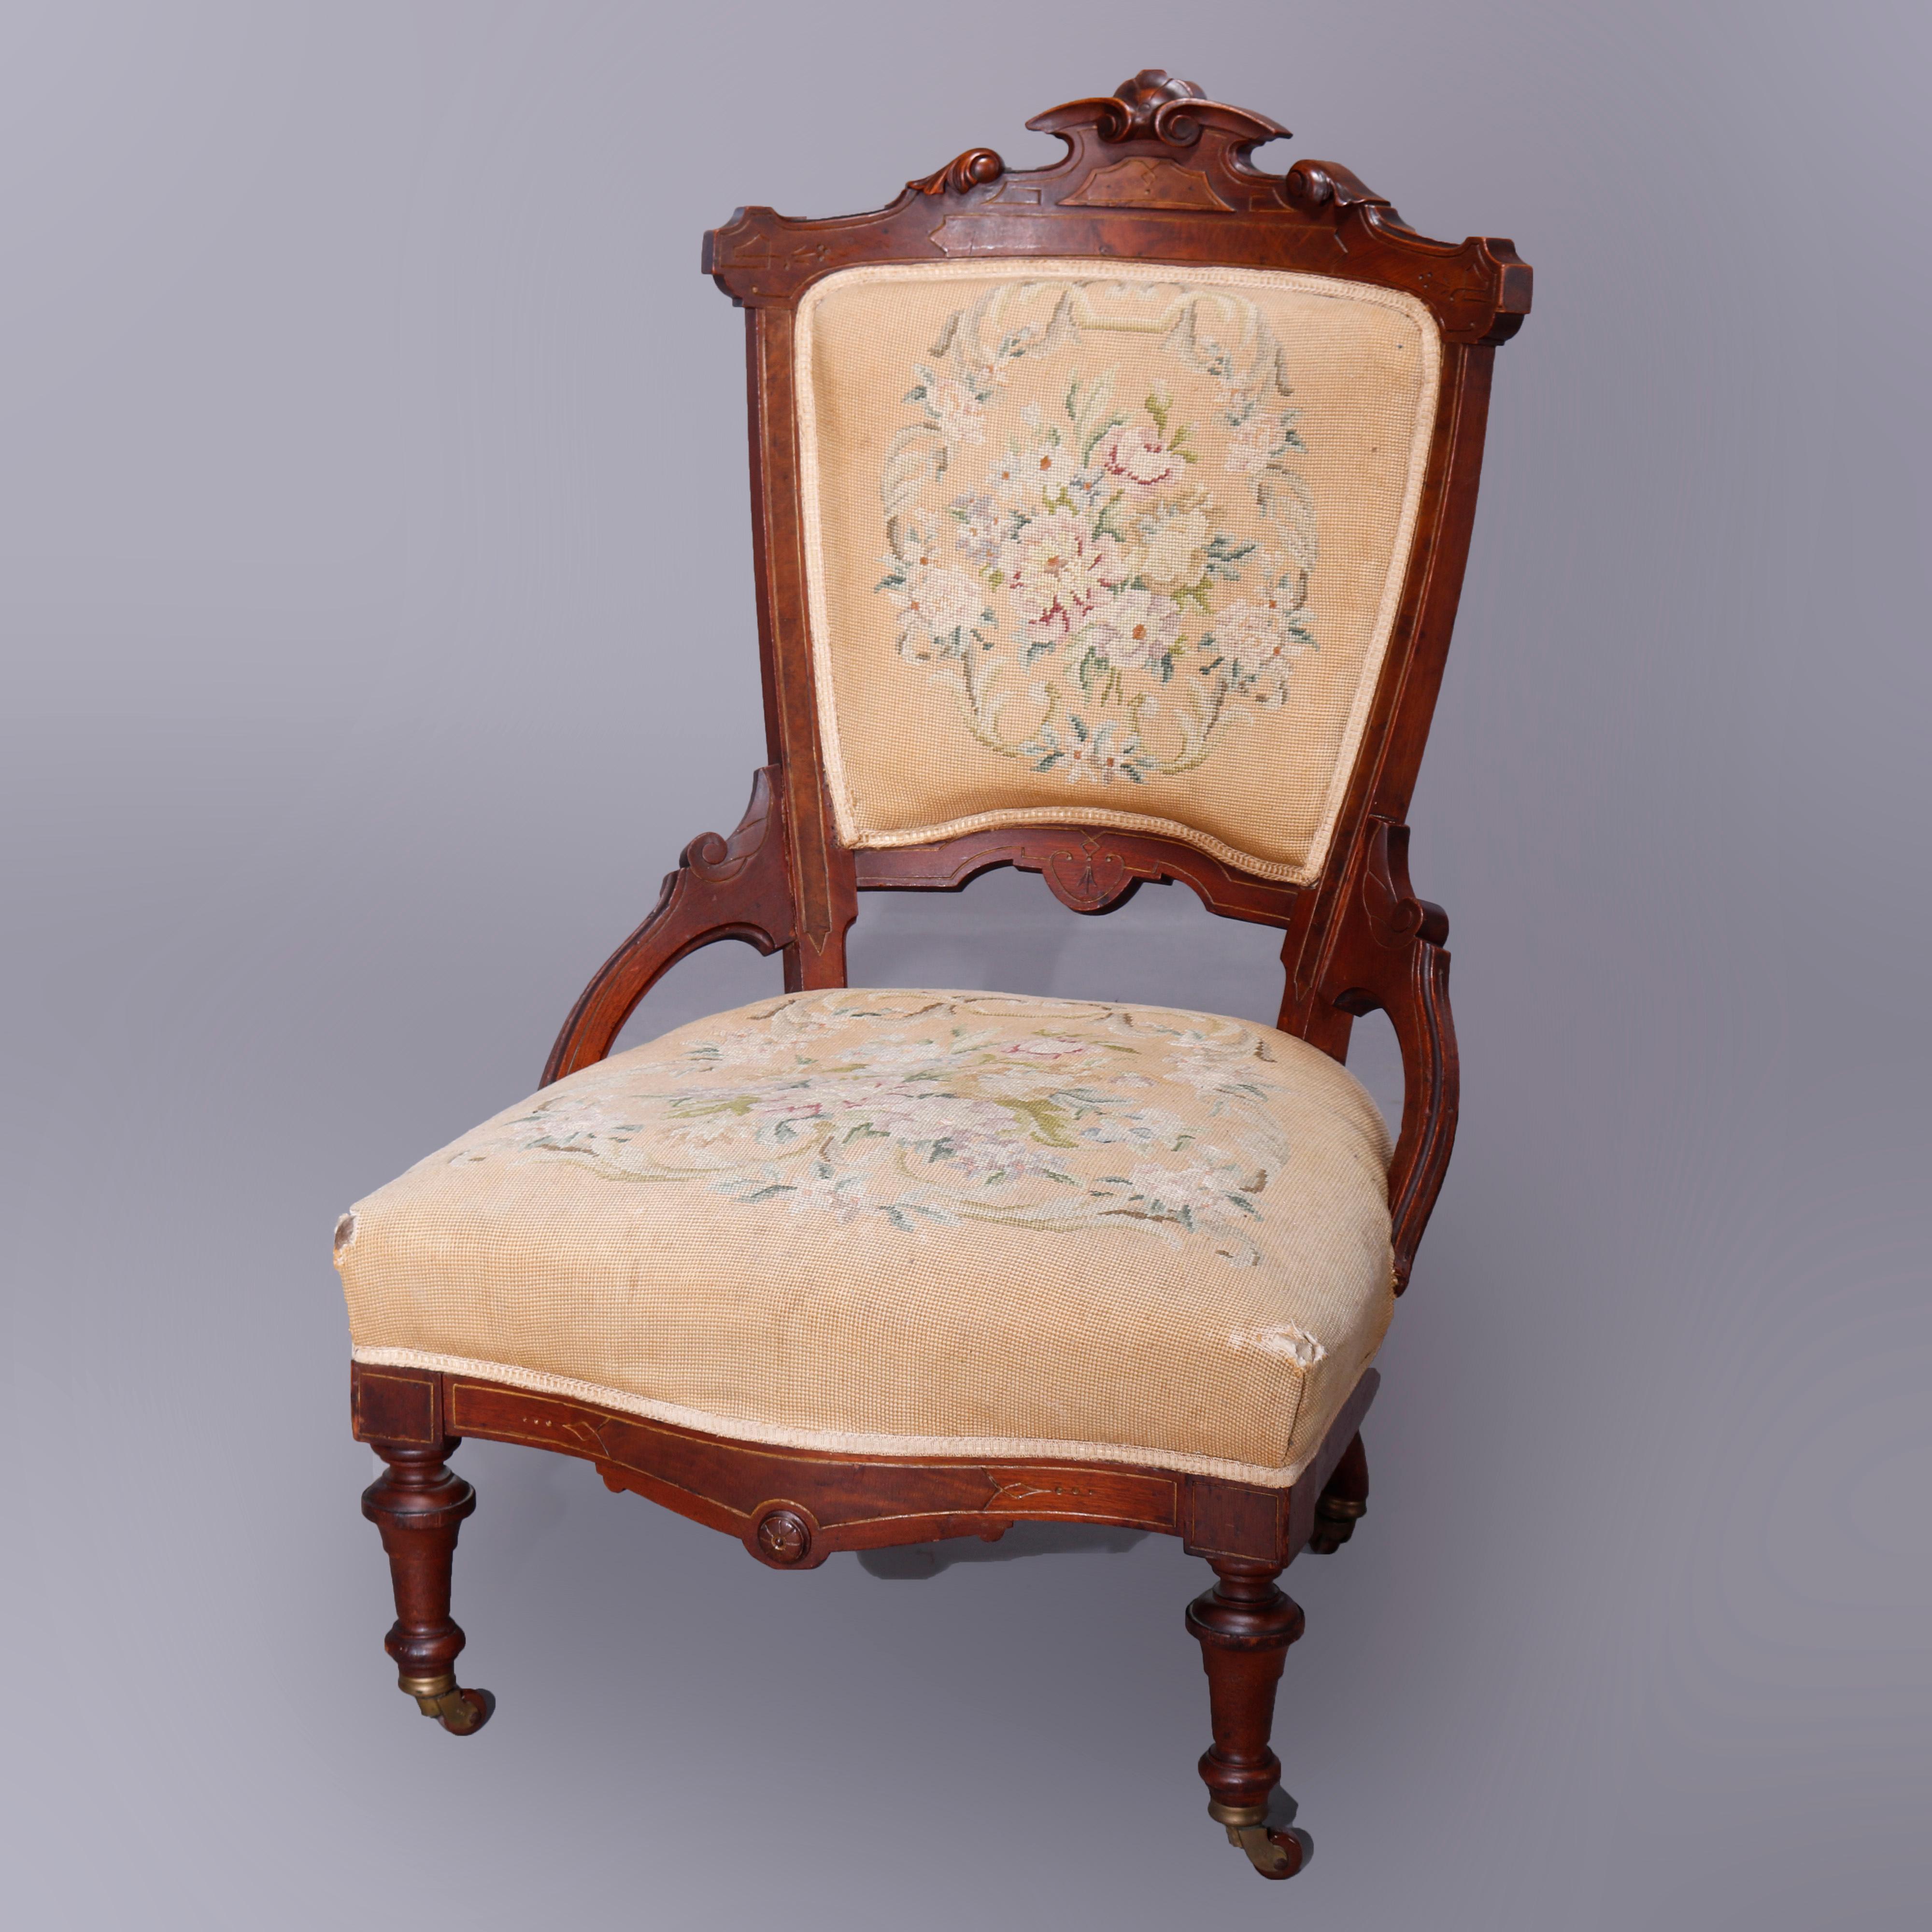 European Antique Renaissance Revival Walnut, Burl & Needlepoint Parlor Chairs, c1890 For Sale